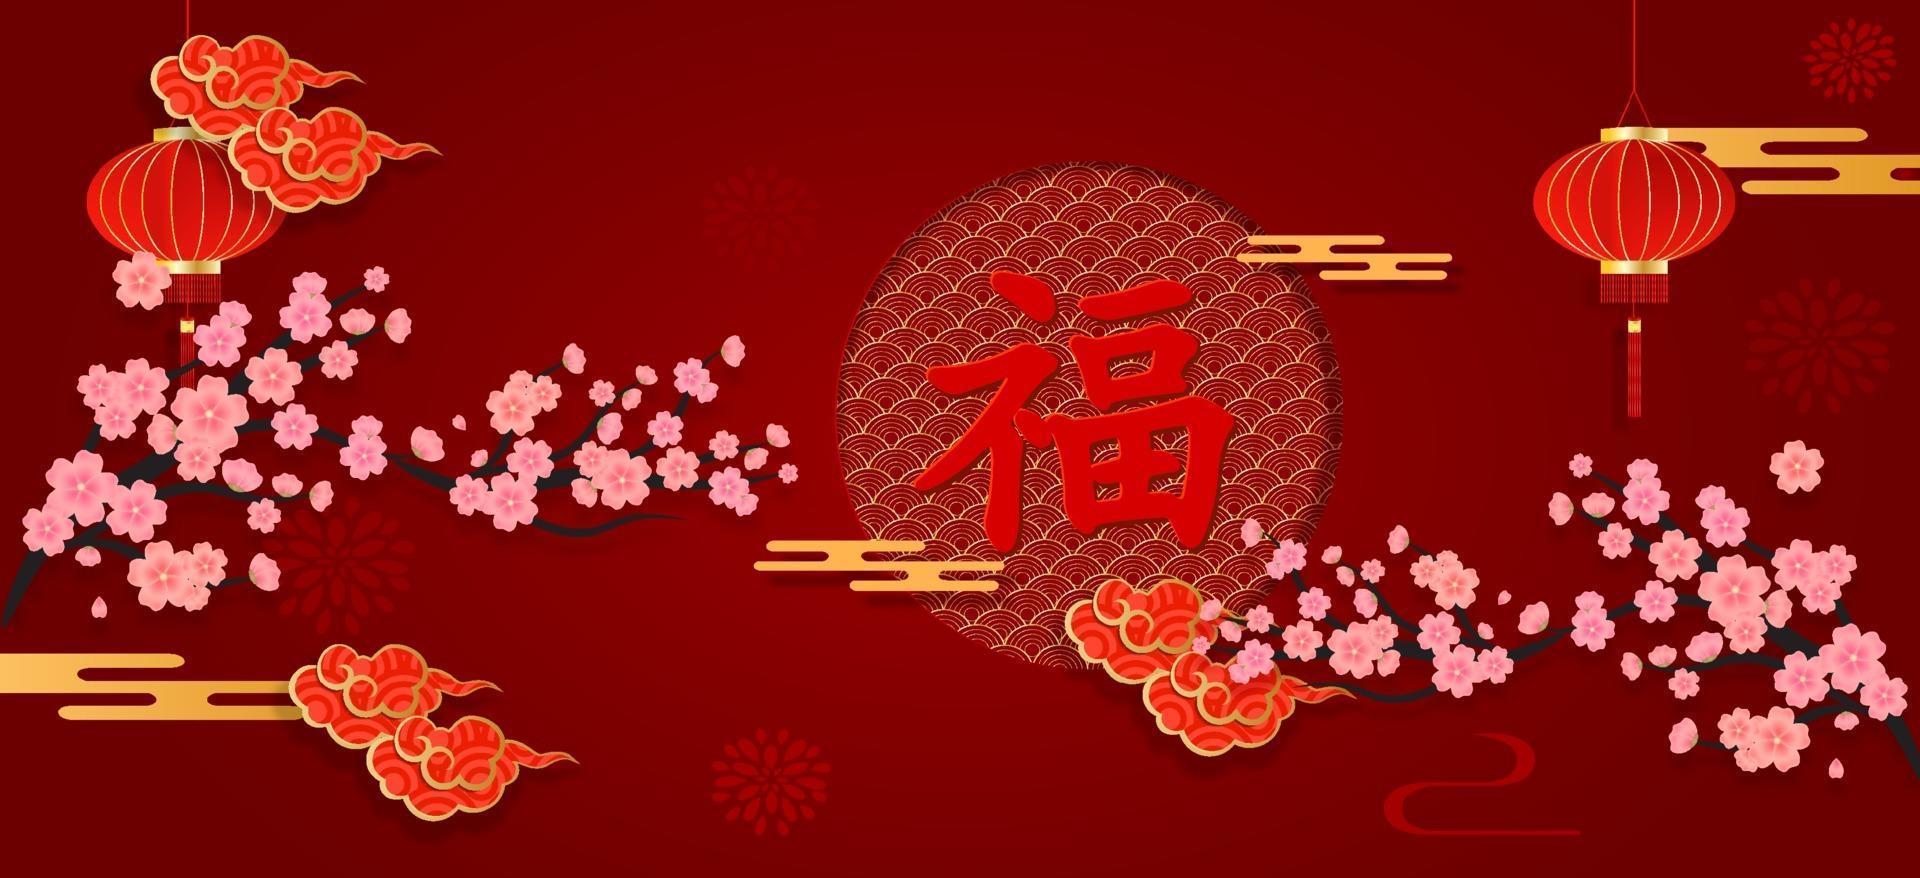 banner di capodanno cinese su carta rossa tagliata con stile artigianale di elementi asiatici. benedizioni di carattere cinese scritte su di esso, per celebrare il capodanno cinese. vettore